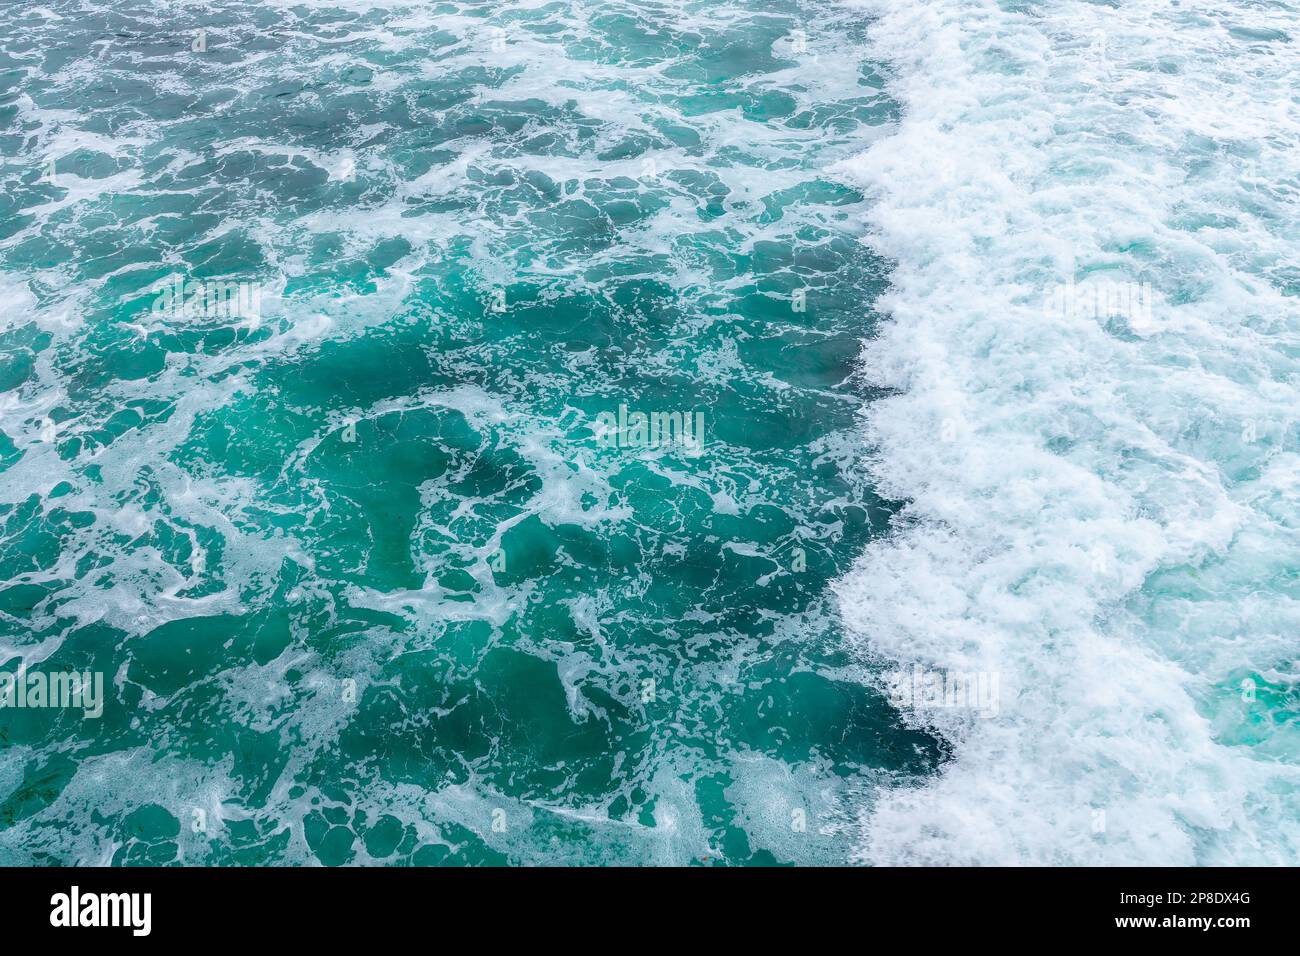 Draufsicht einer aufprallenden Welle. Blaues, klares Wasser, Meereshintergrund. Stockfoto